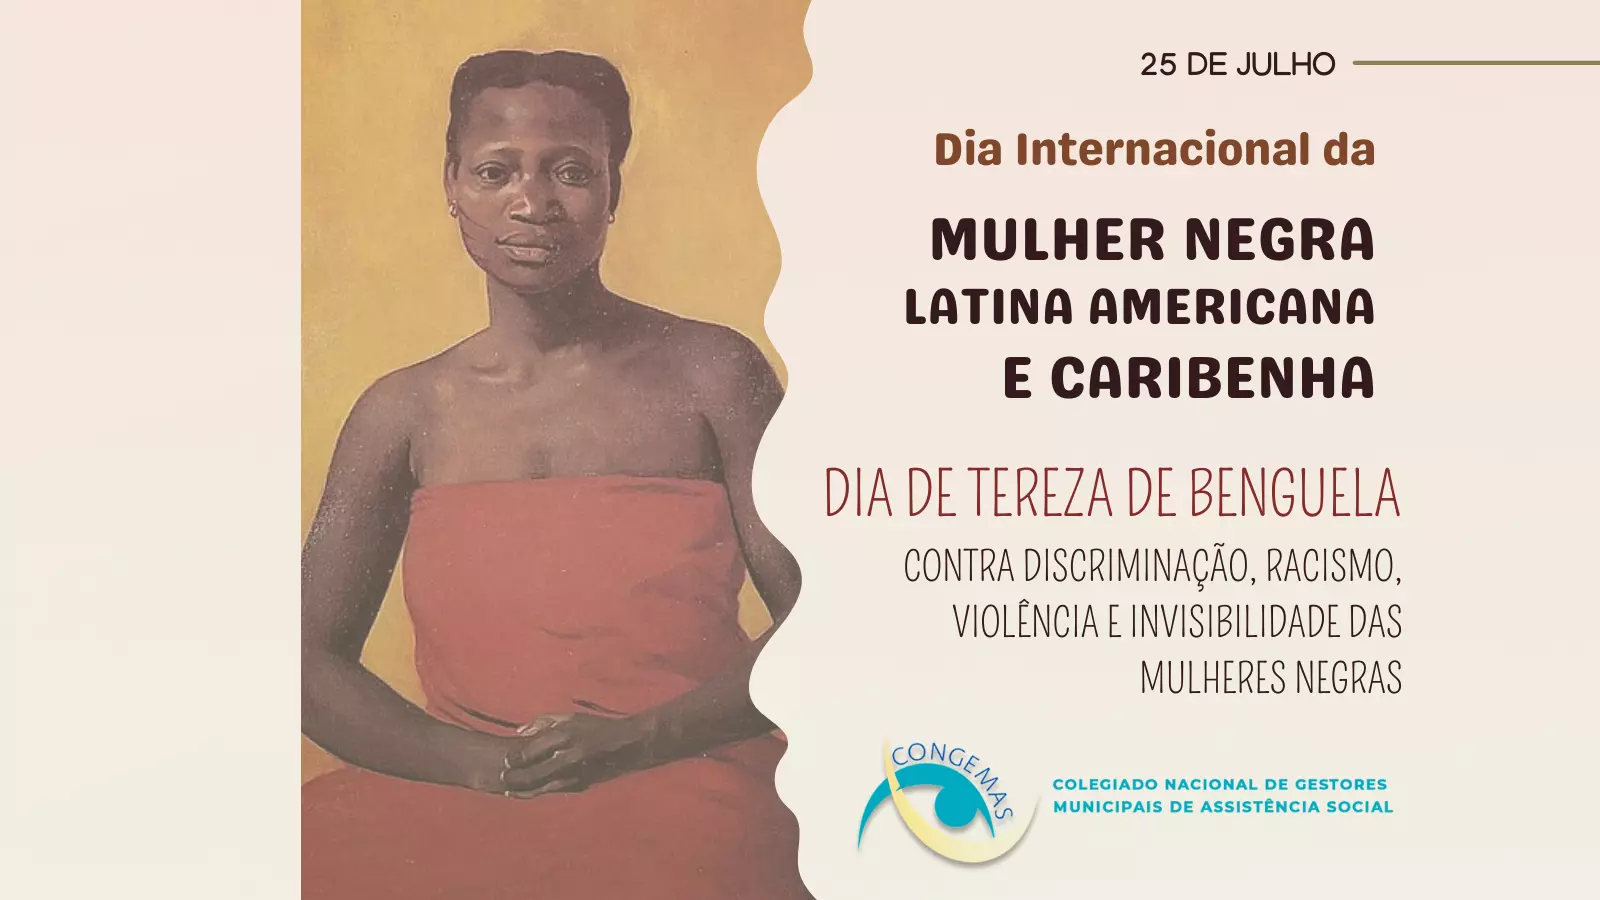 Dia Internacional da Mulher Negra Latino-Americana e Caribenha 25/07/22